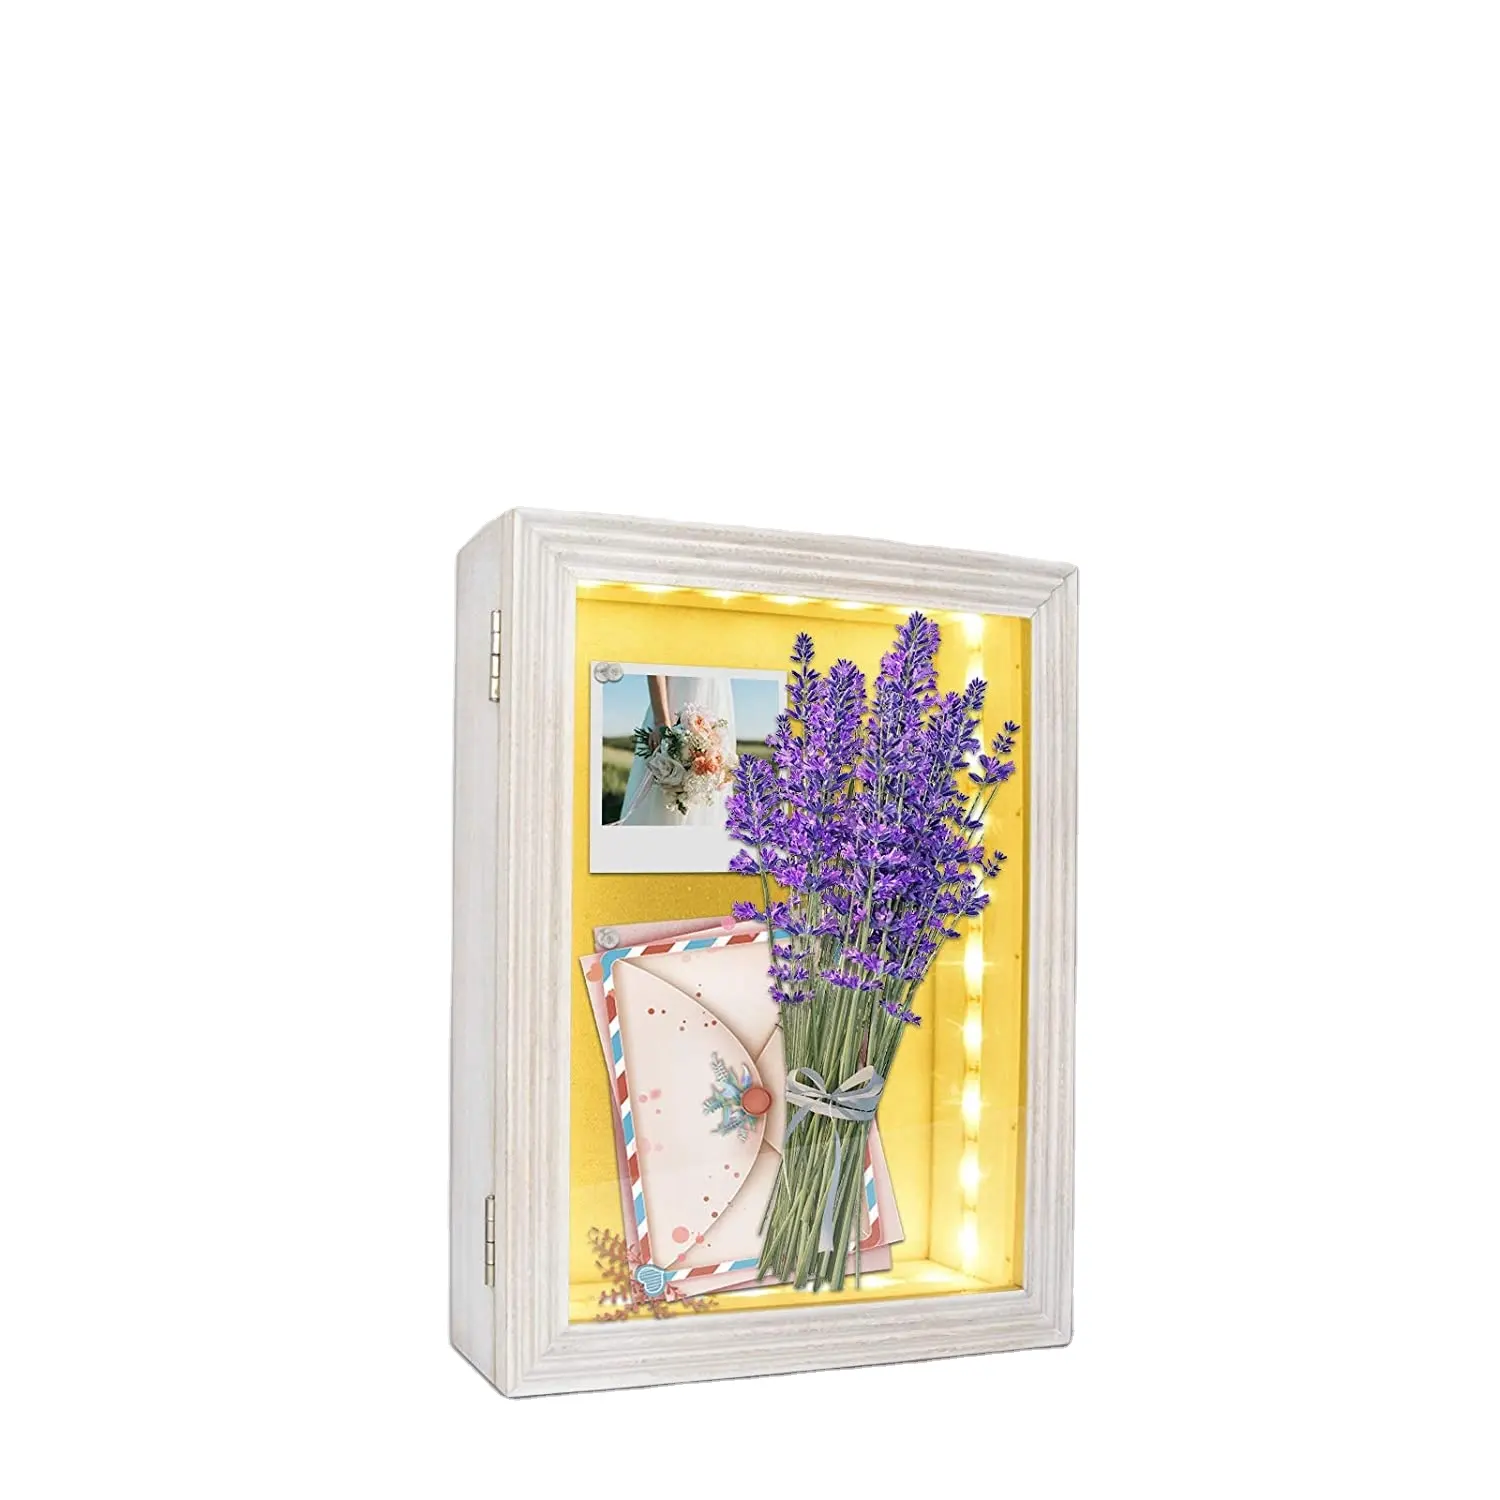 ชนบทสไตล์ LED 8X10สีขาวภาพไม้จำนวนมากซื้อตกแต่งหน่วยความจำแม่เหล็กขนาดใหญ่แสงเงากล่องกรอบดอกไม้